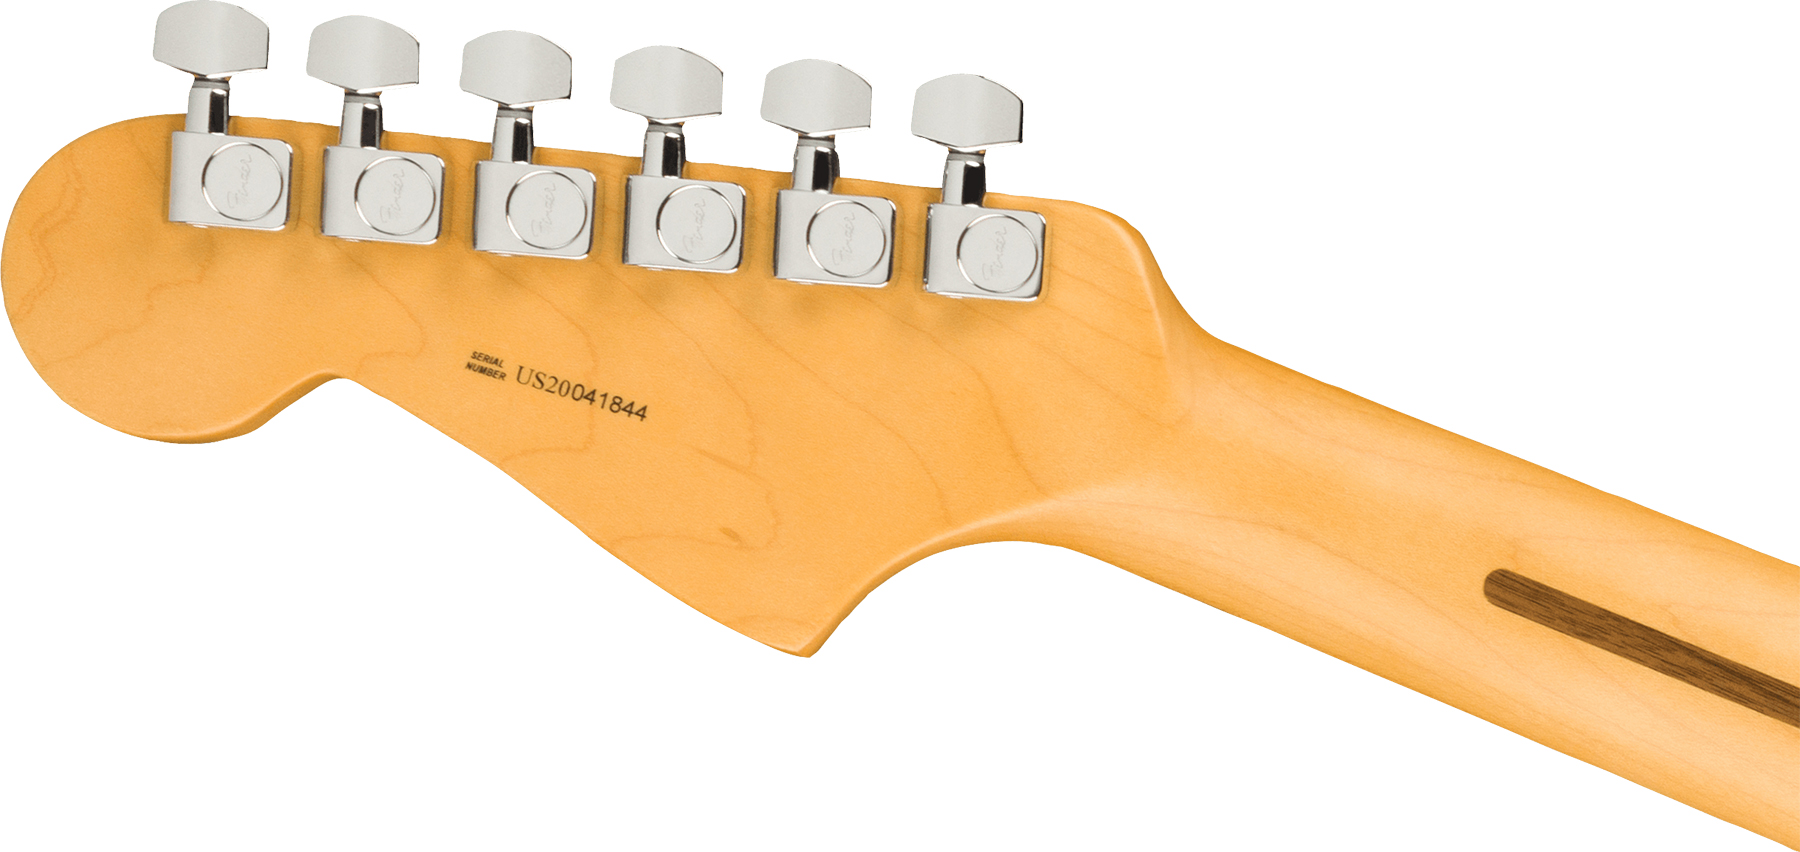 Fender Jazzmaster American Professional Ii Lh Gaucher Usa Rw - 3-color Sunburst - E-Gitarre für Linkshänder - Variation 3